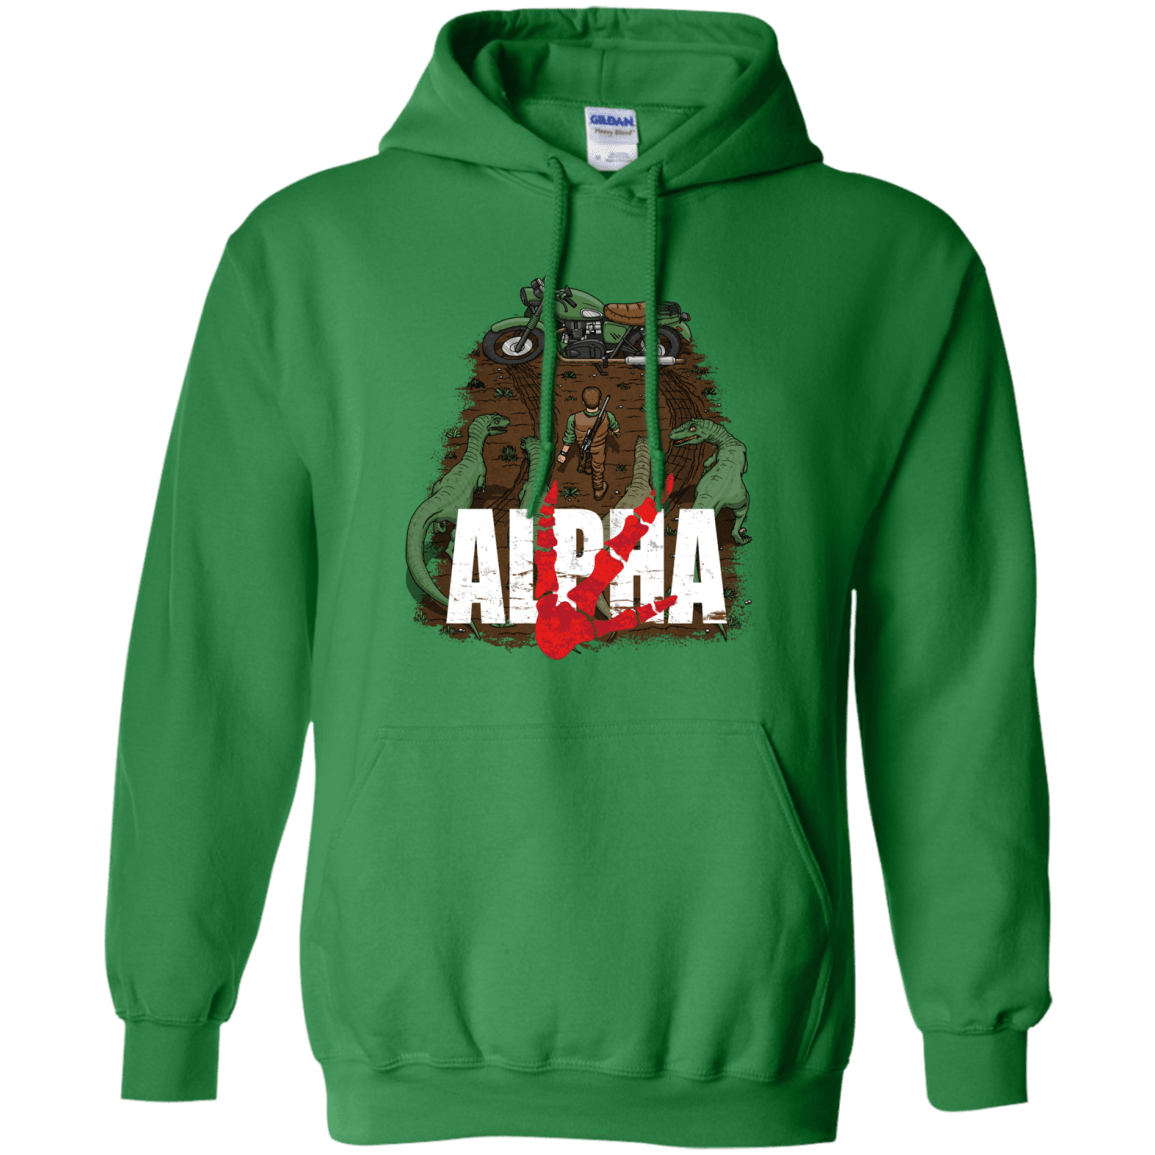 Sweatshirts Irish Green / Small Akira Park Pullover Hoodie